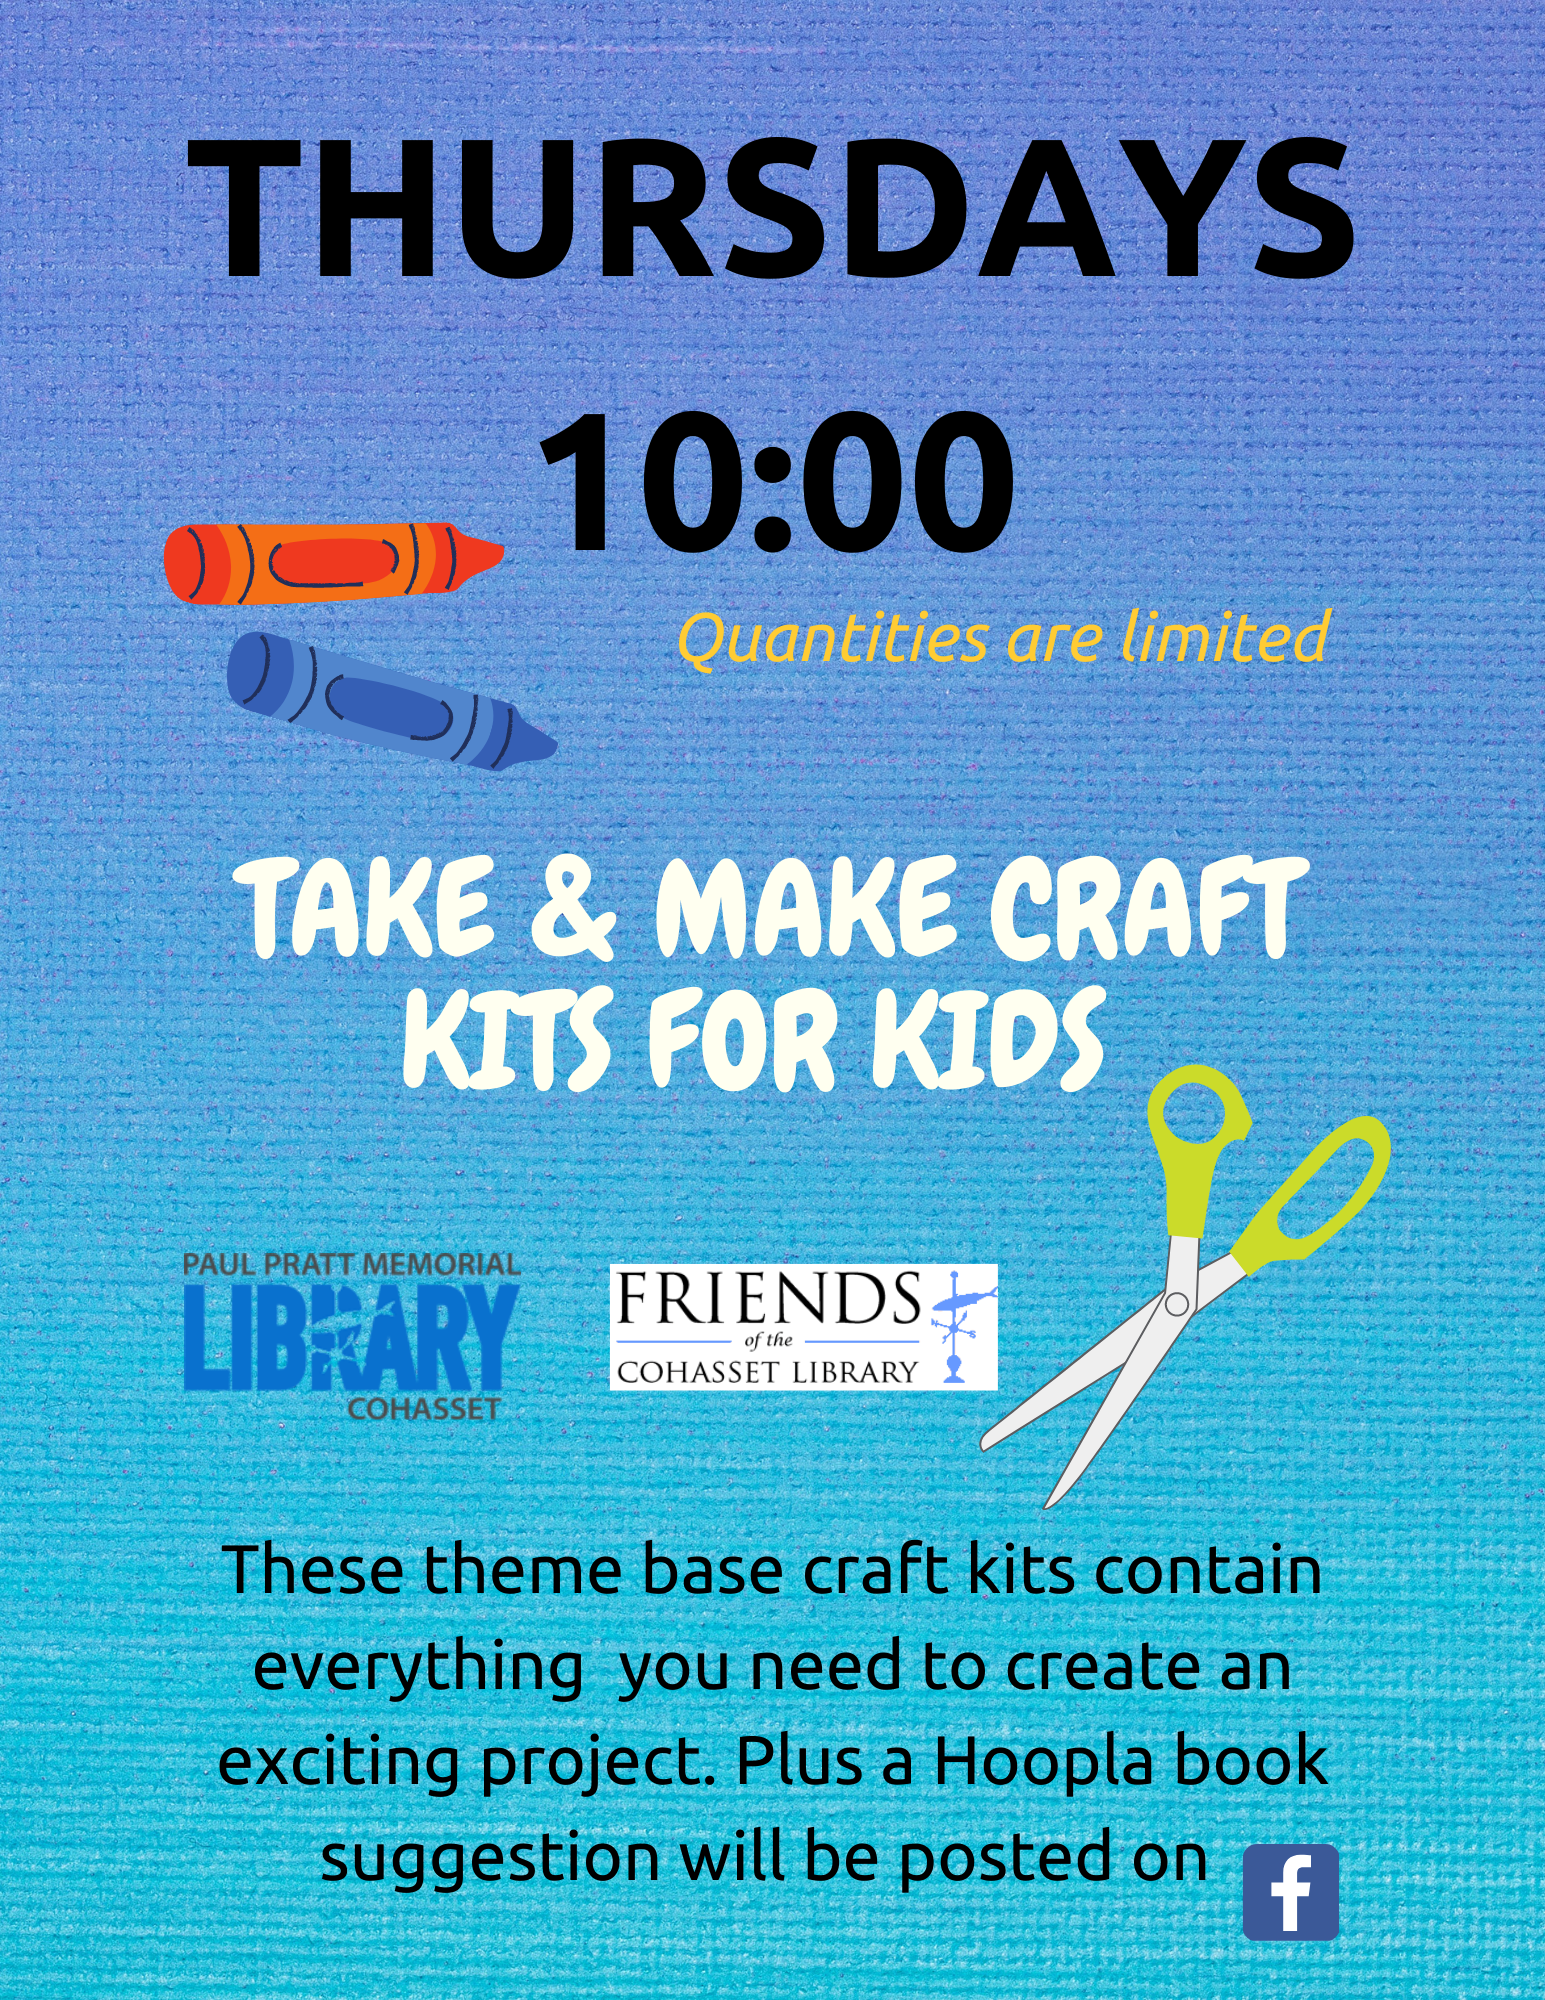 Take & Make Craft Kits for Kids